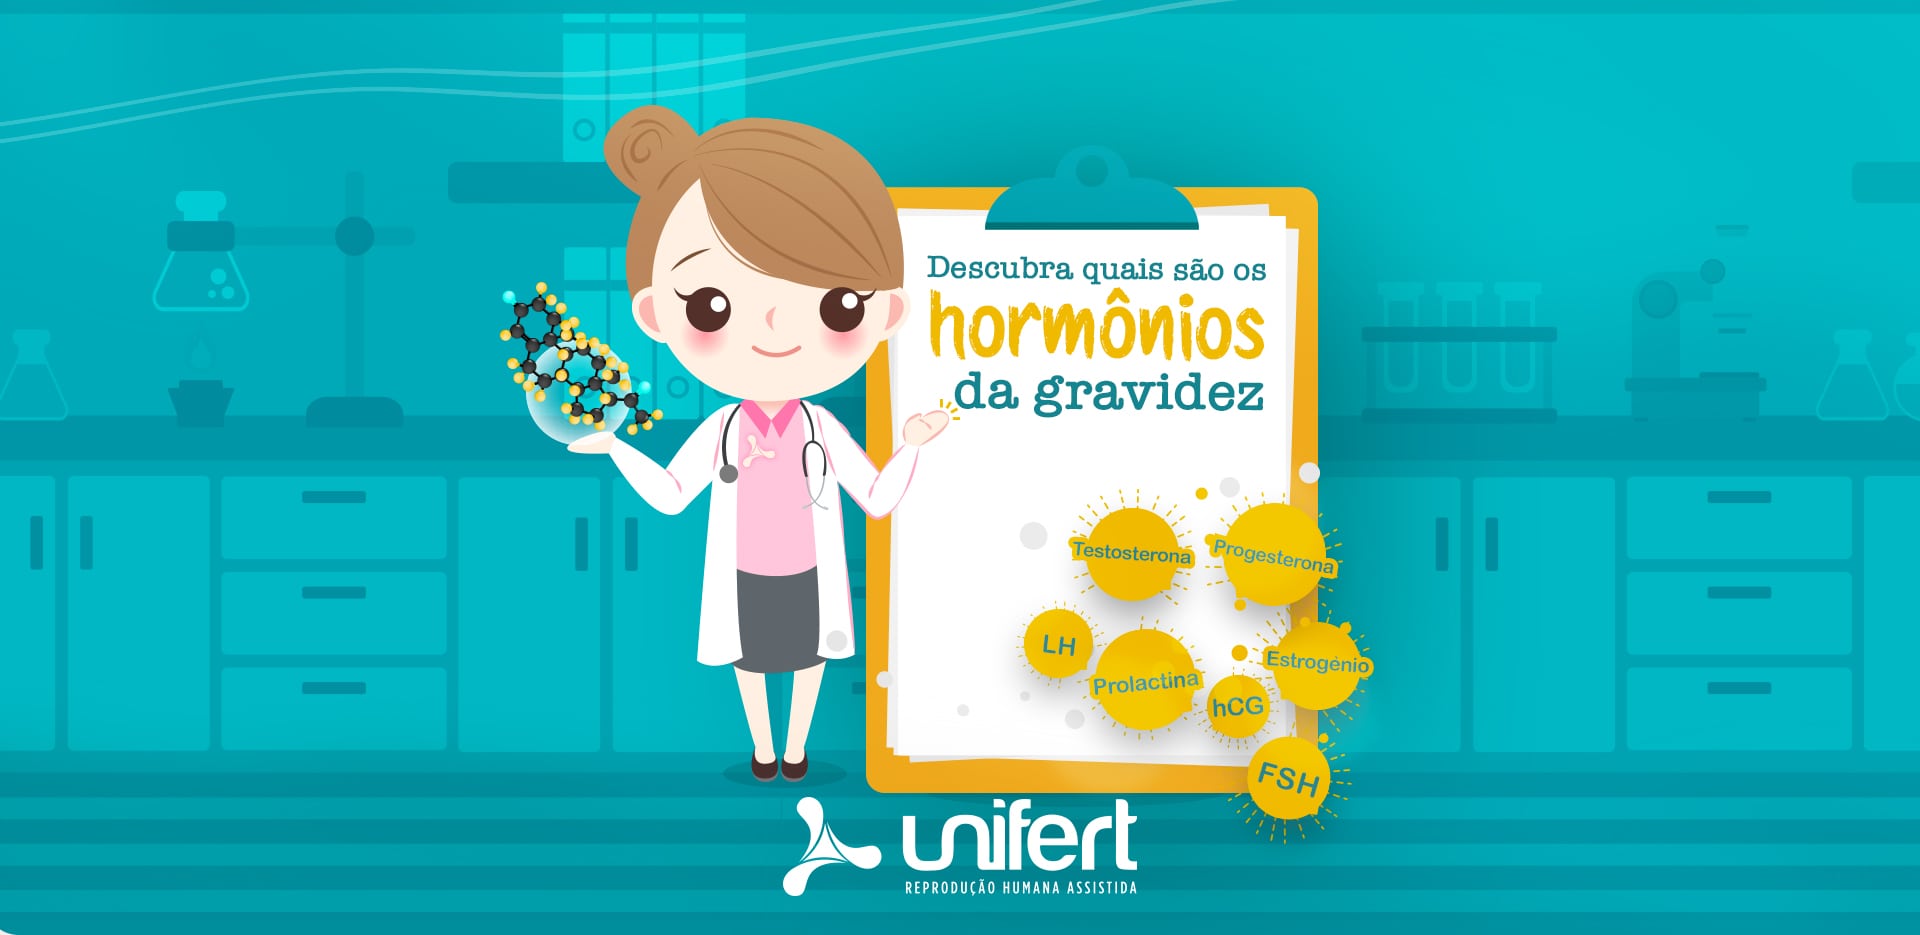 Descubra quais são os hormônios da gravidez